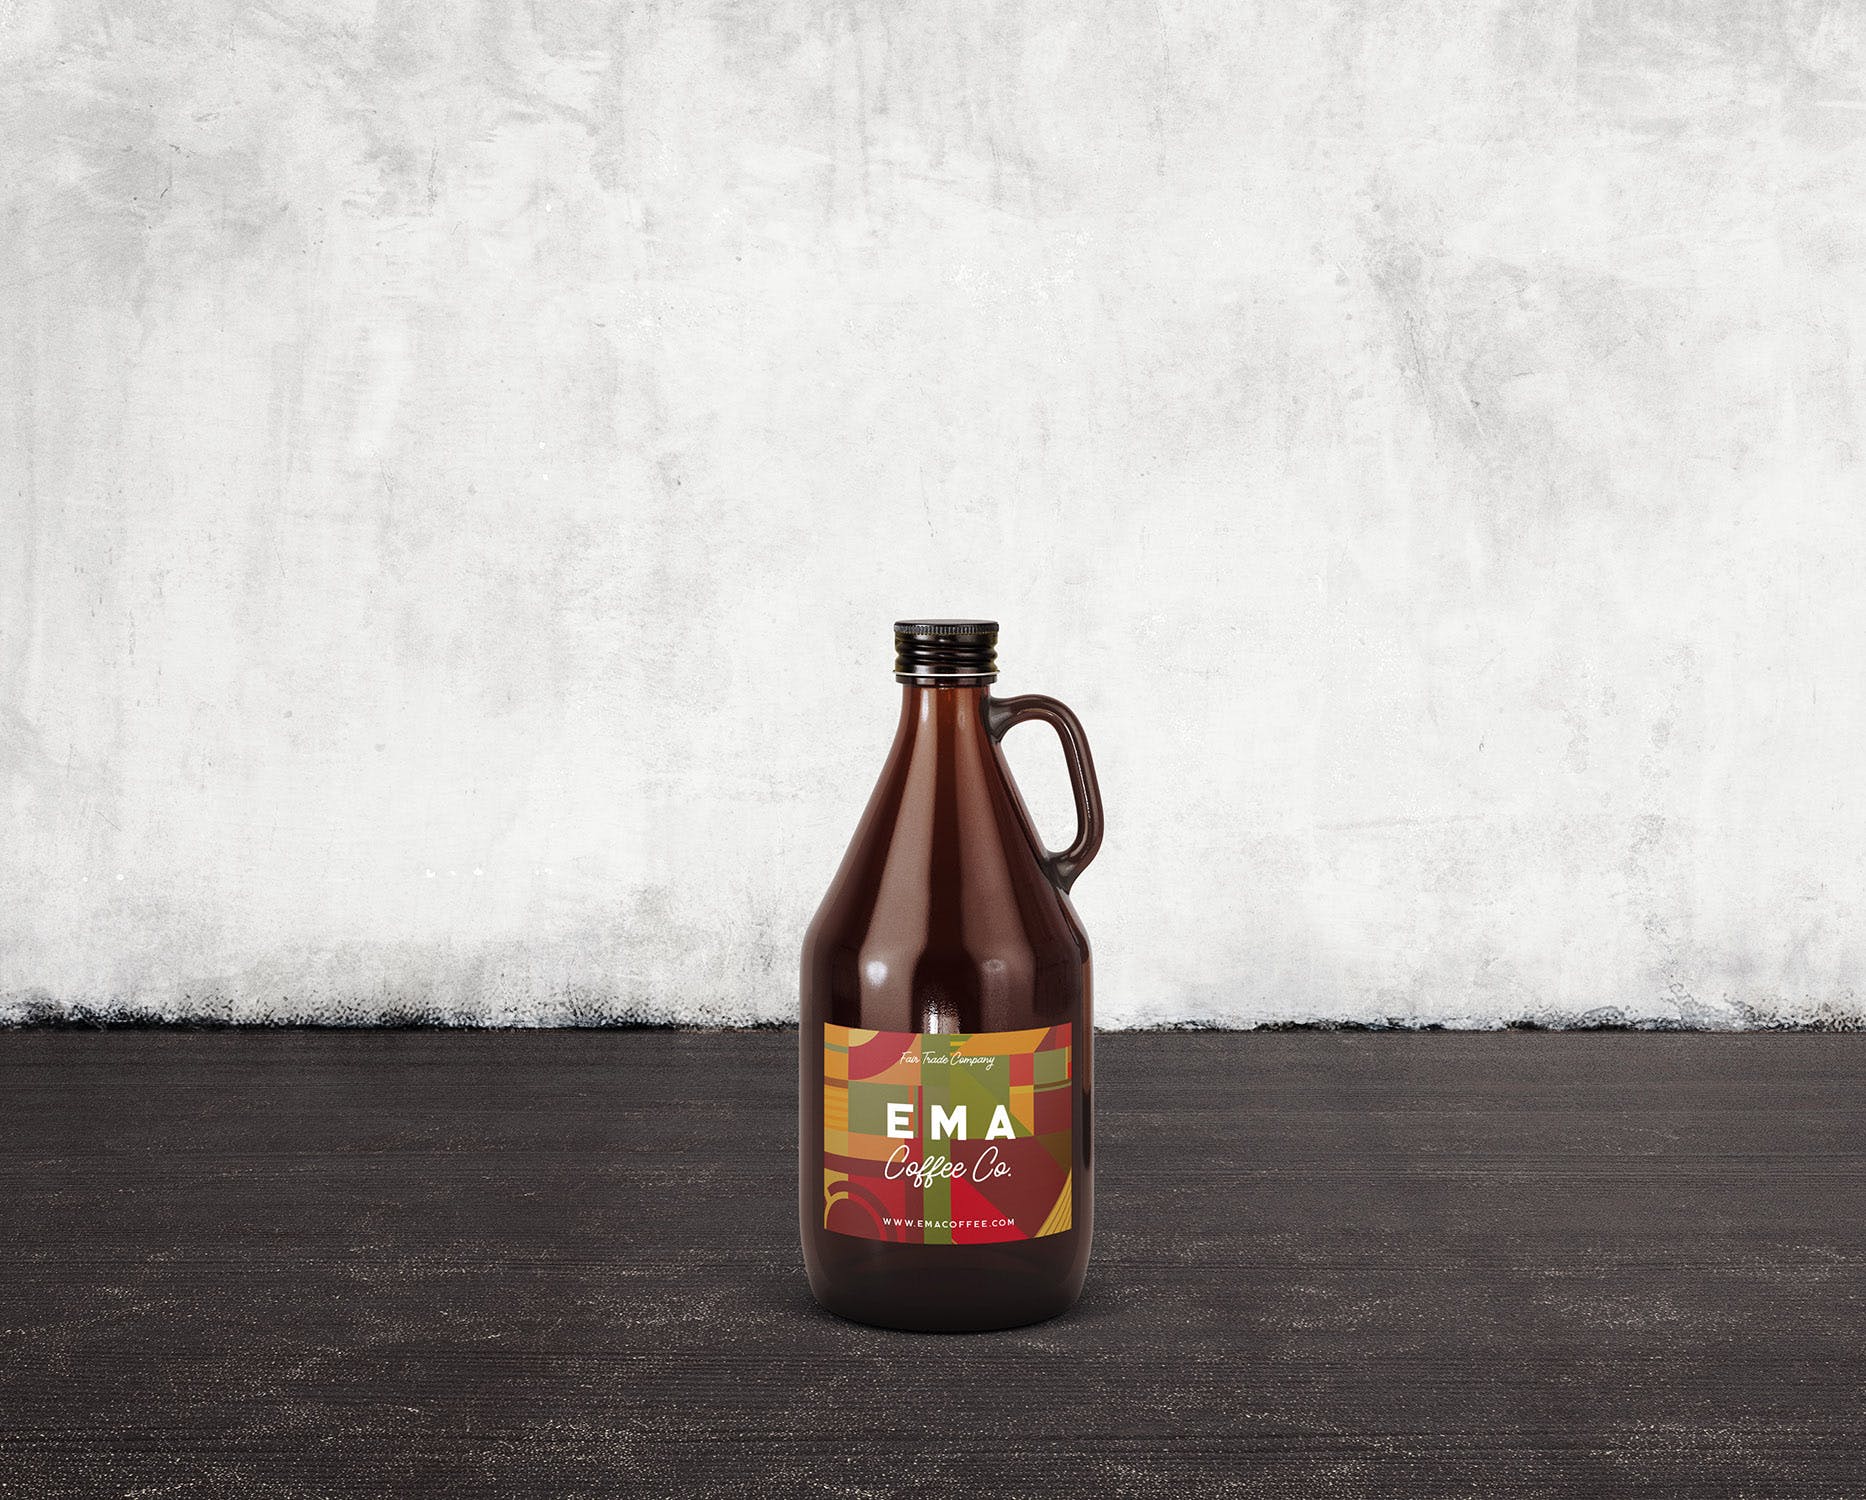 6个啤酒/咖啡/牛奶瓶外观设计第一素材精选v1 6 Beer Coffee Milk Bottles Mockups 1插图(7)